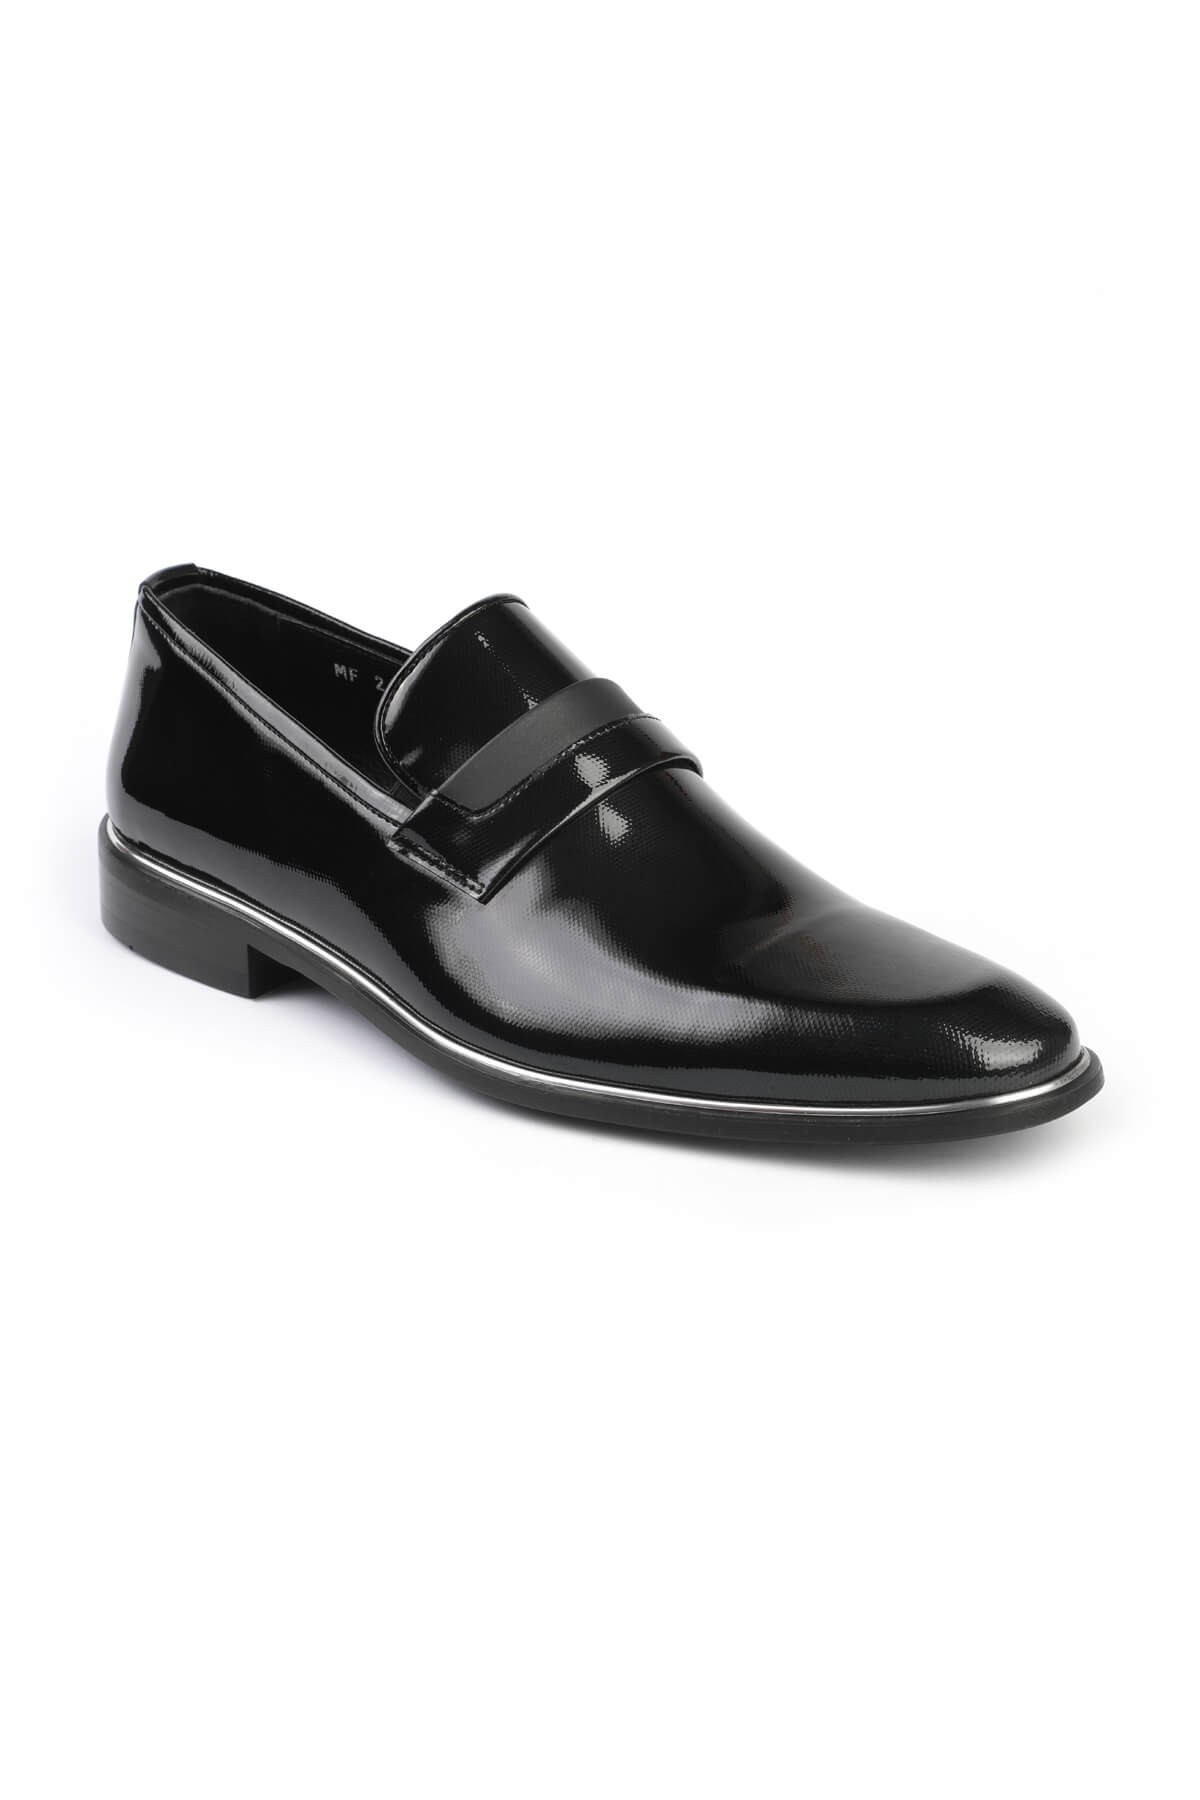 Libero 2602 Klasik Erkek Ayakkabı - SIYAH